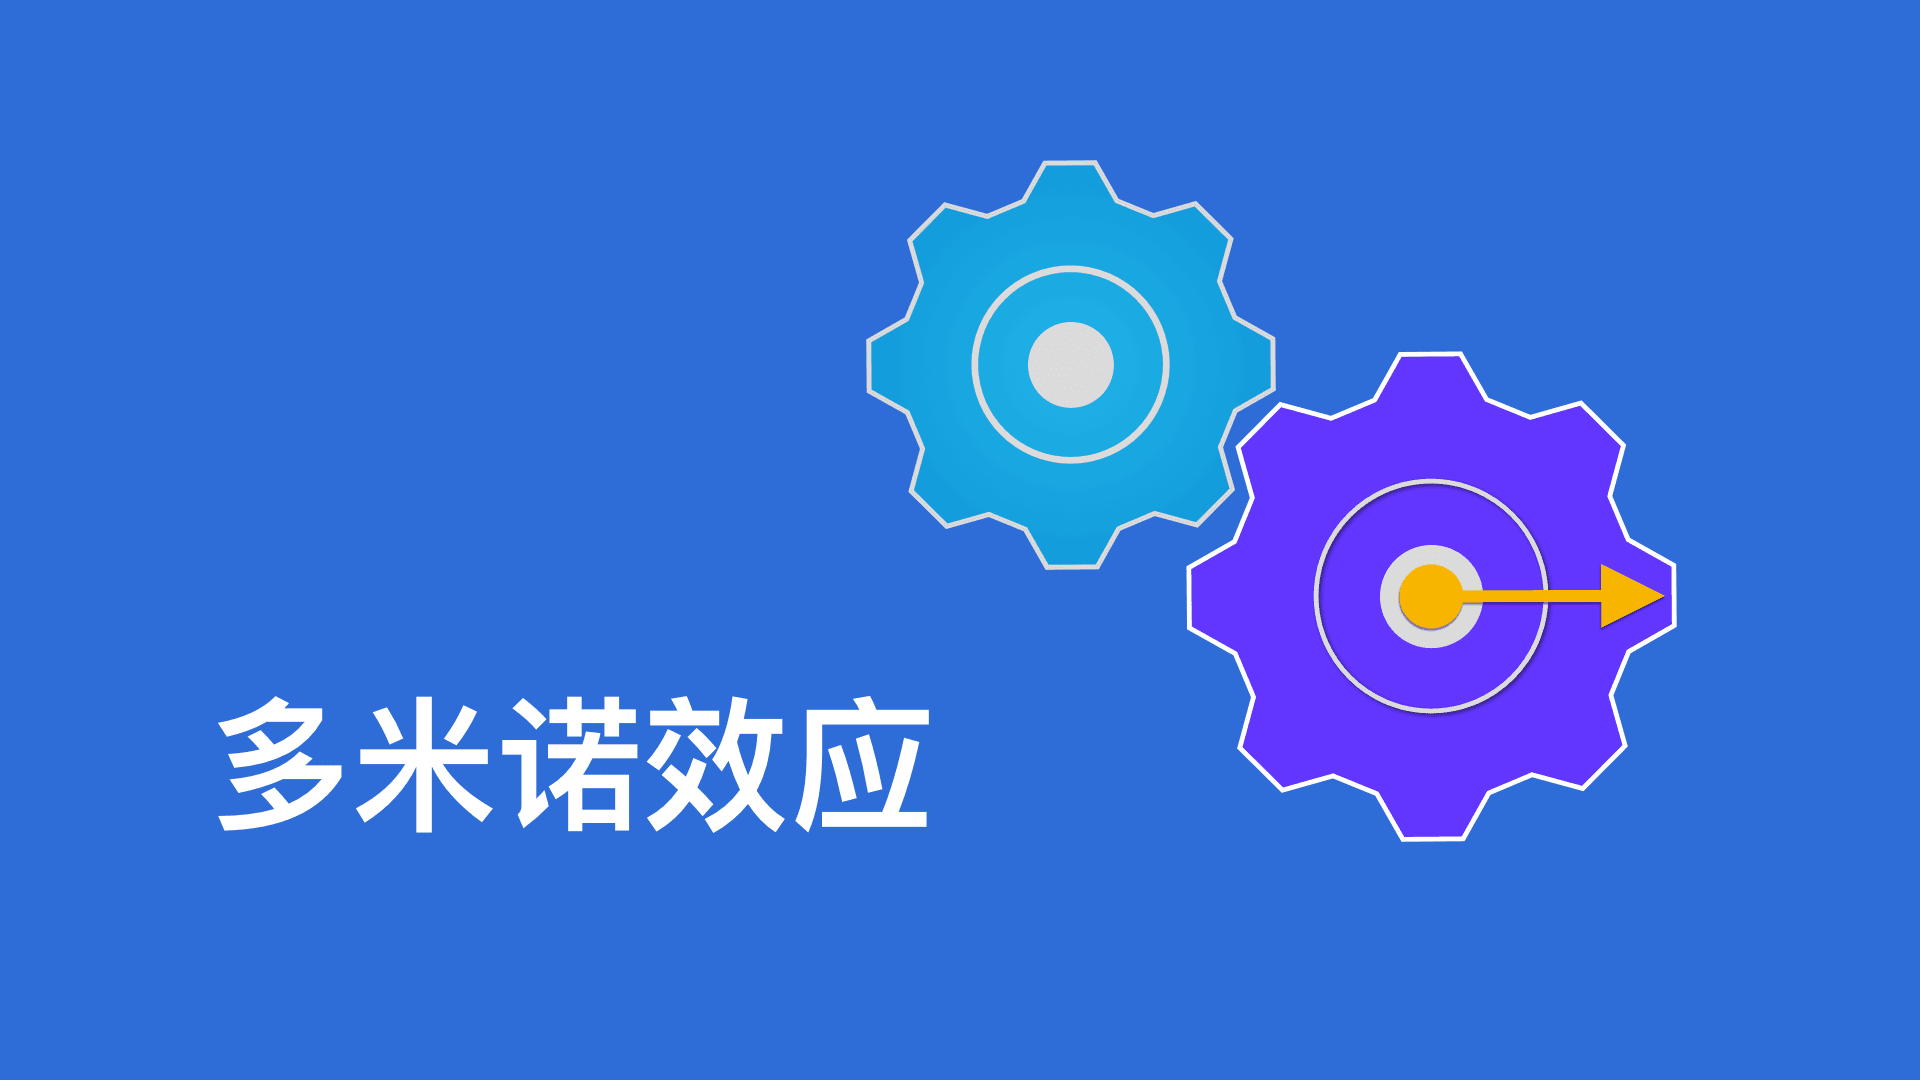 Banner of 多米諾齒輪 1.0.1